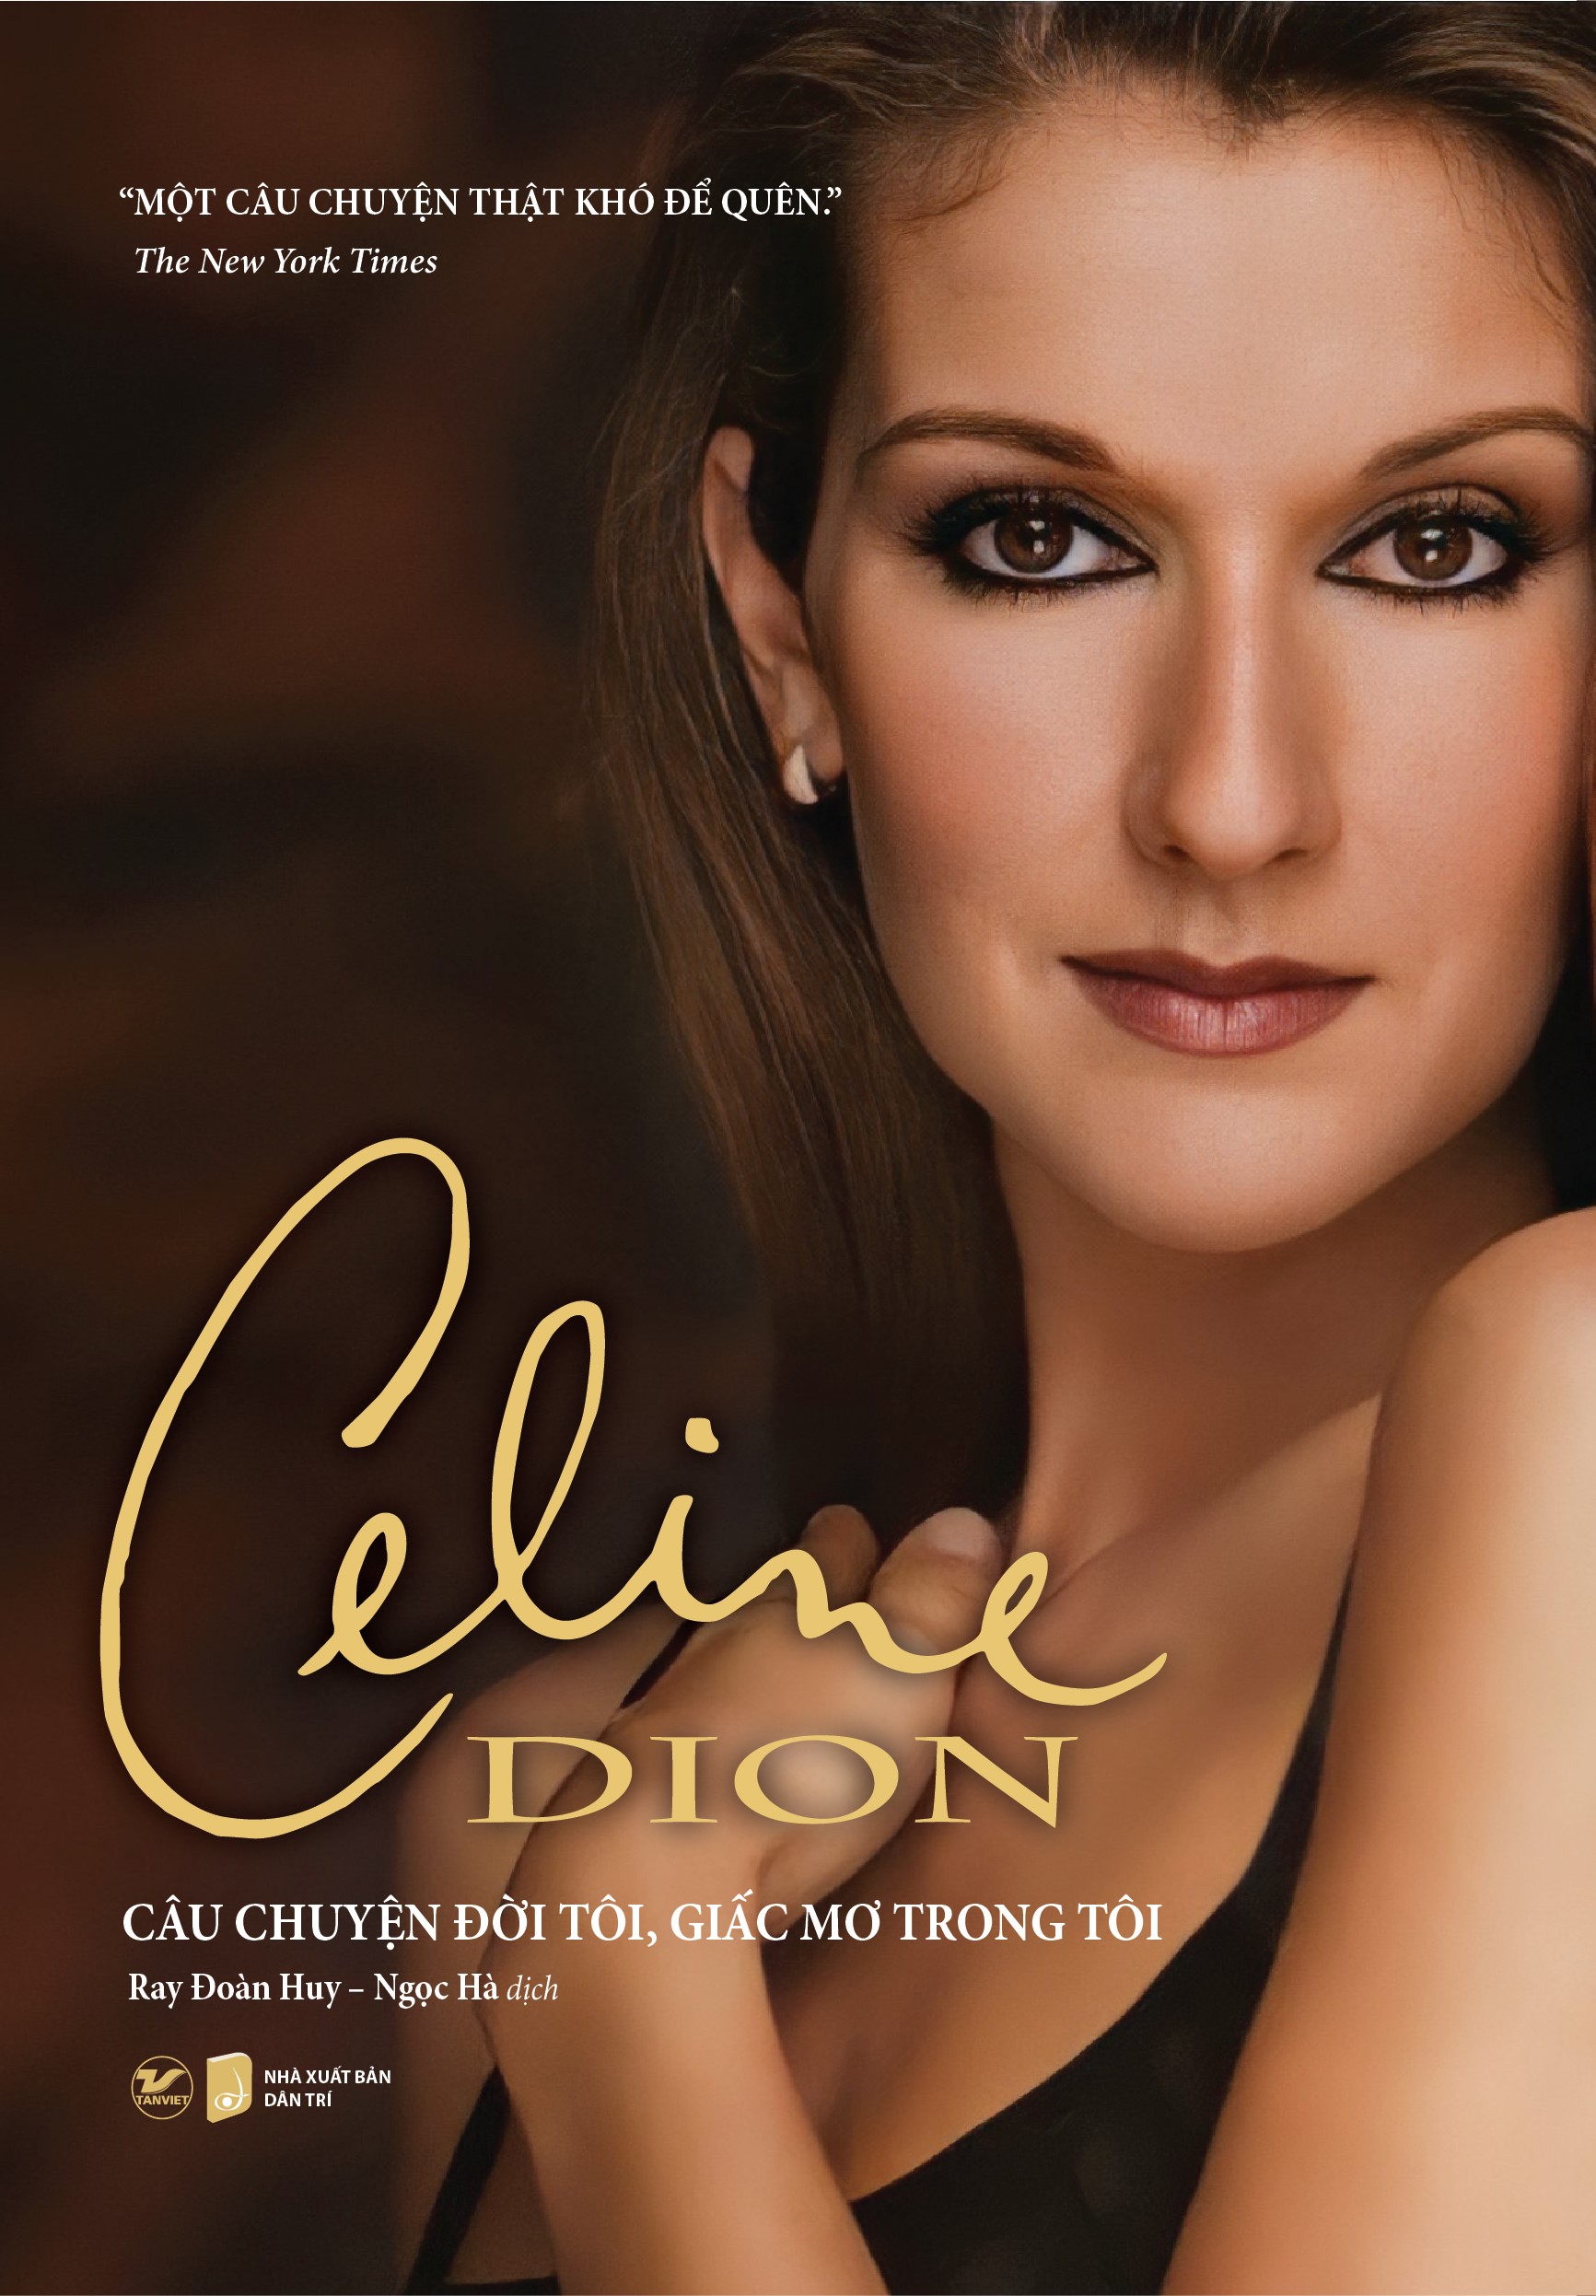 Bộ Sách Món Quà Giáng Sinh: Câu Chuyện Đời Tôi, Giấc Mơ Tôi - Celine Dion Wham! George Và Tôi:Hồi Kí PDF